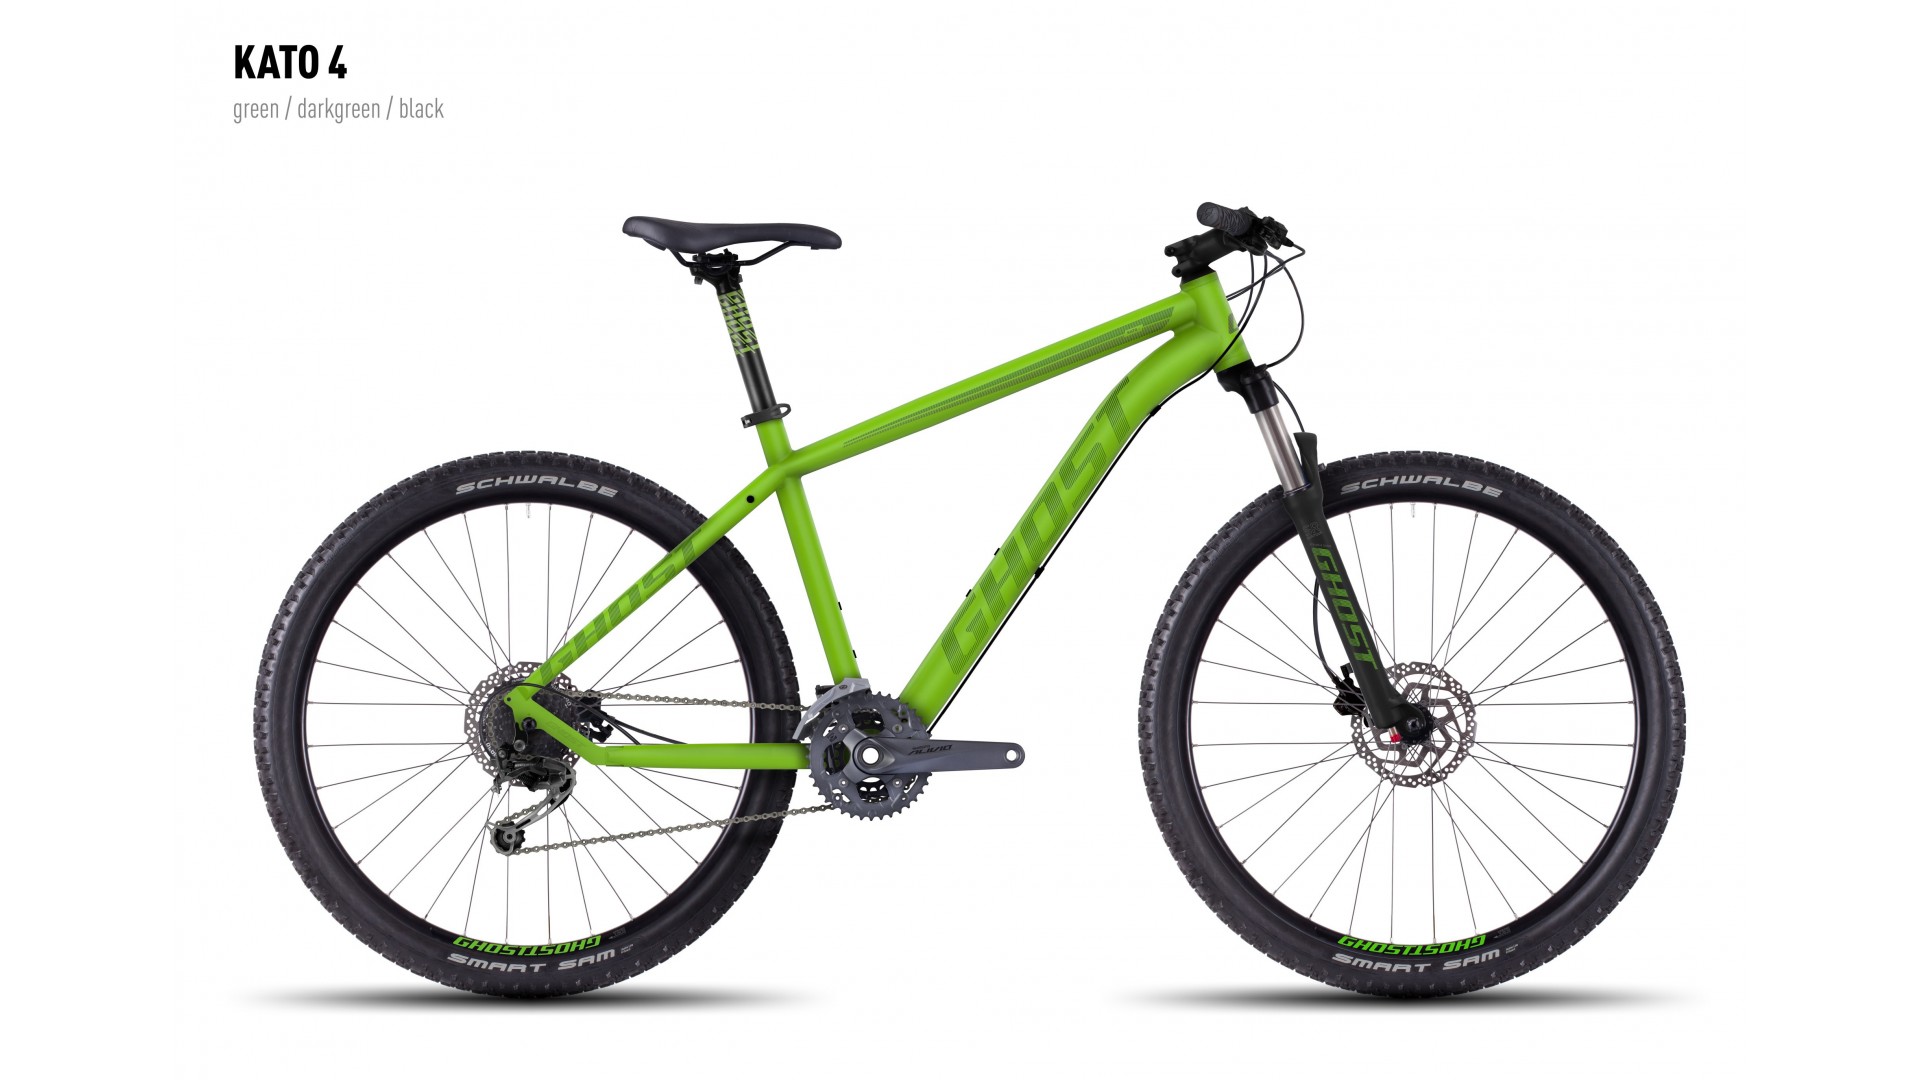 Велосипед GHOST Kato 4 green/darkgreen/black год 2016